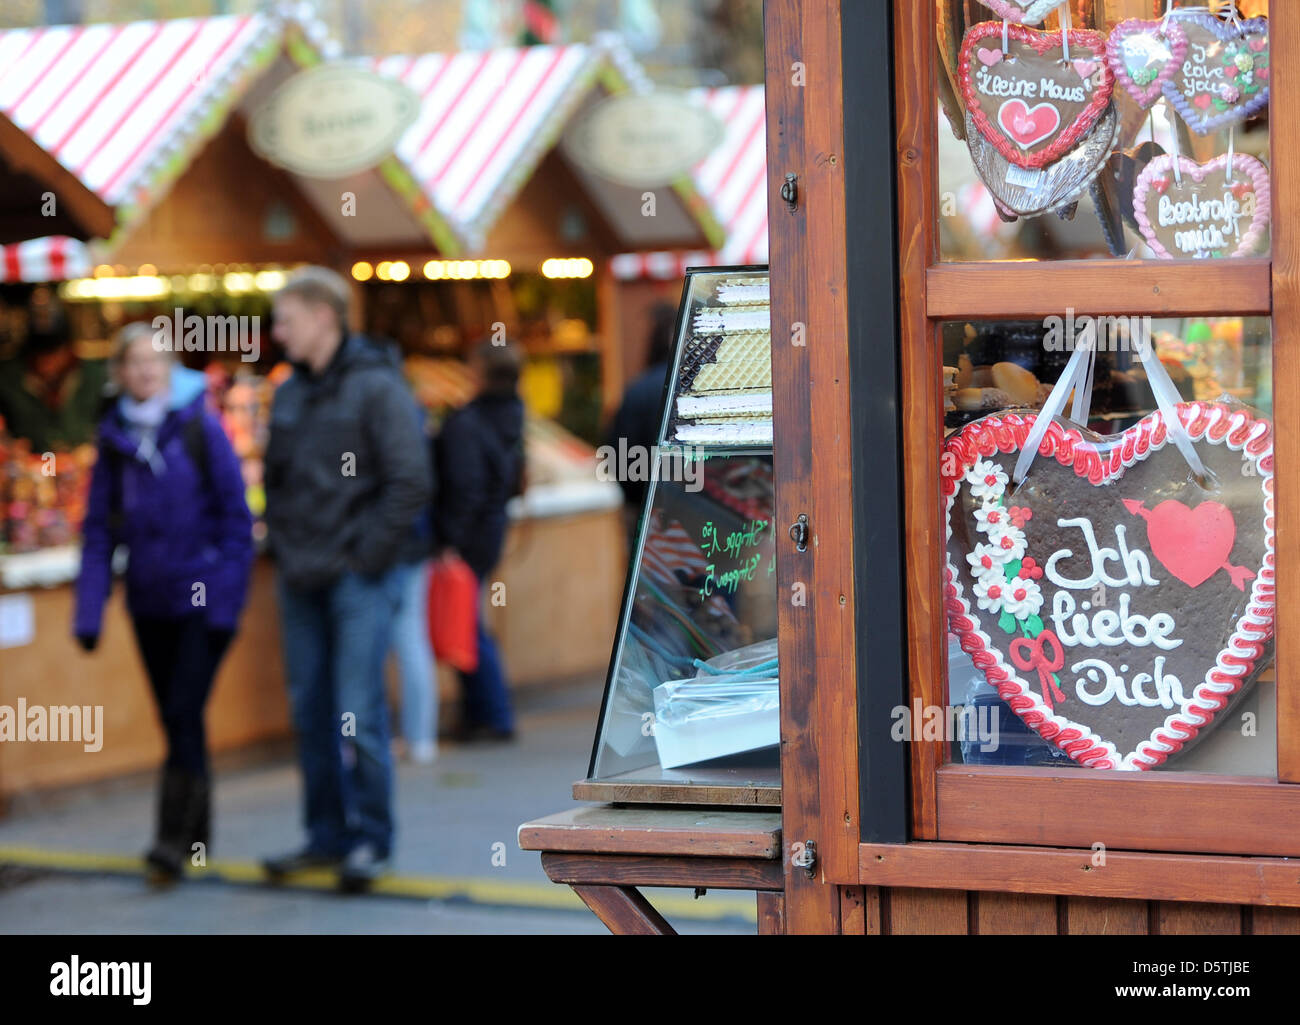 Lebkuchenherzen, ausgestellt in einem Stall auf dem Weihnachtsmarkt in der Nähe der Gedächtniskirche "Gedaechtniskirche" in Berlin, Deutschland, 26. November 2012. Weihnachtsmärkte in Berlin eröffnen. Foto: Britta Pedersen Stockfoto